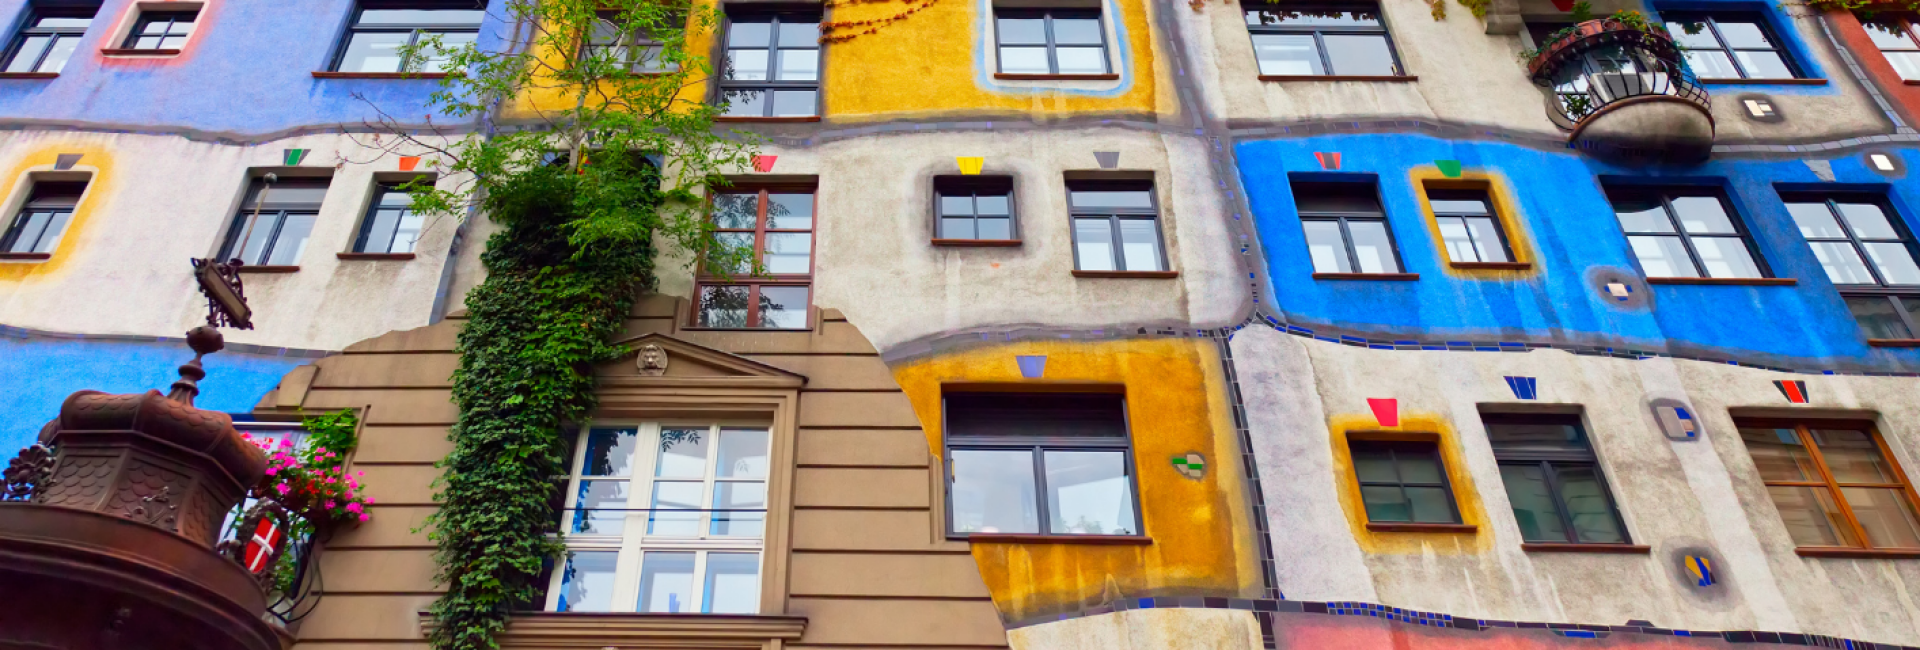 Huis van Friedensreich Hundertwasser de Oostenrijkse Architect en kunstenaar